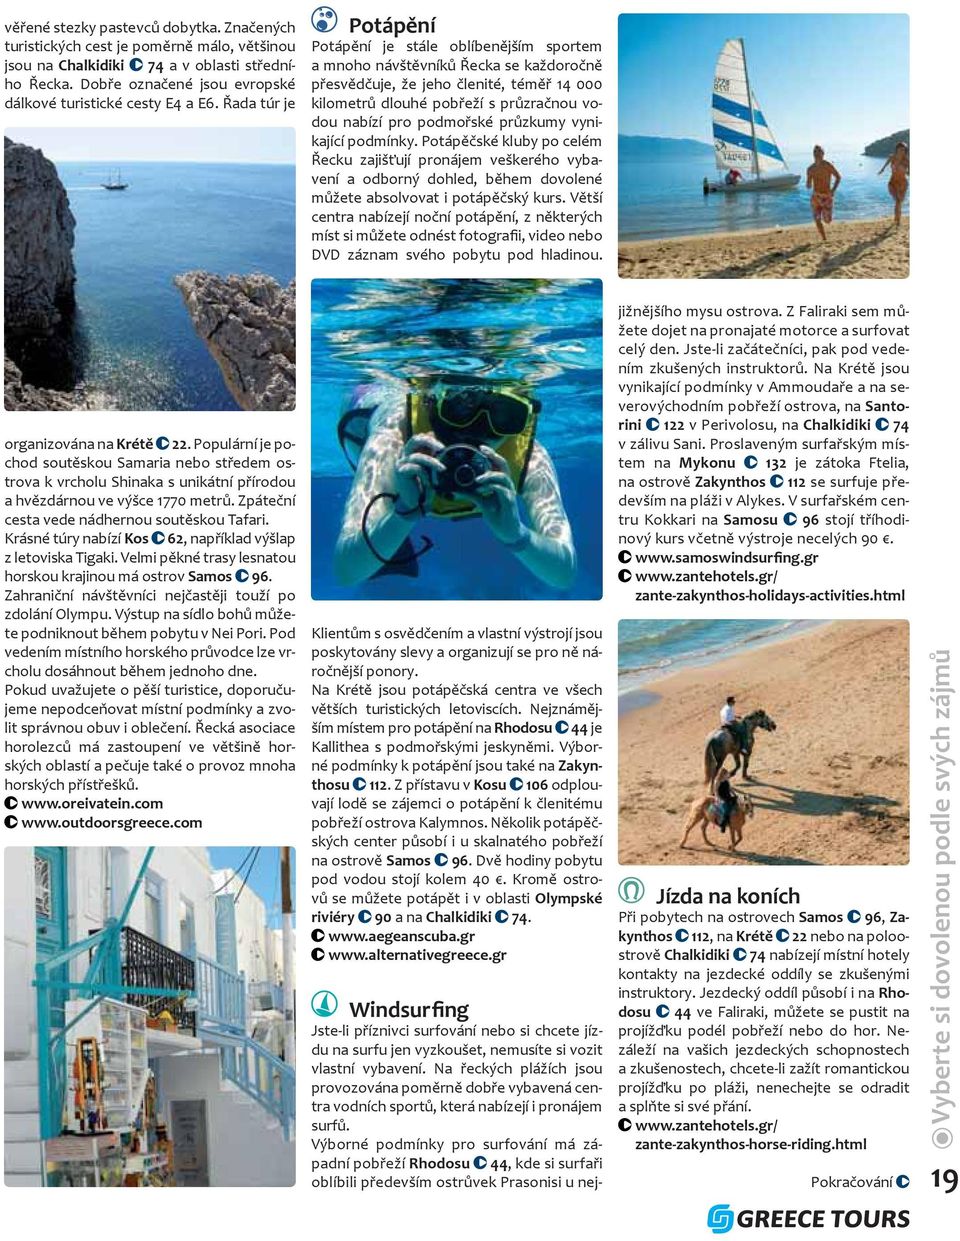 podmořské průzkumy vynikající podmínky. Potápěčské kluby po celém Řecku zajišťují pronájem veškerého vybavení a odborný dohled, během dovolené můžete absolvovat i potápěčský kurs.